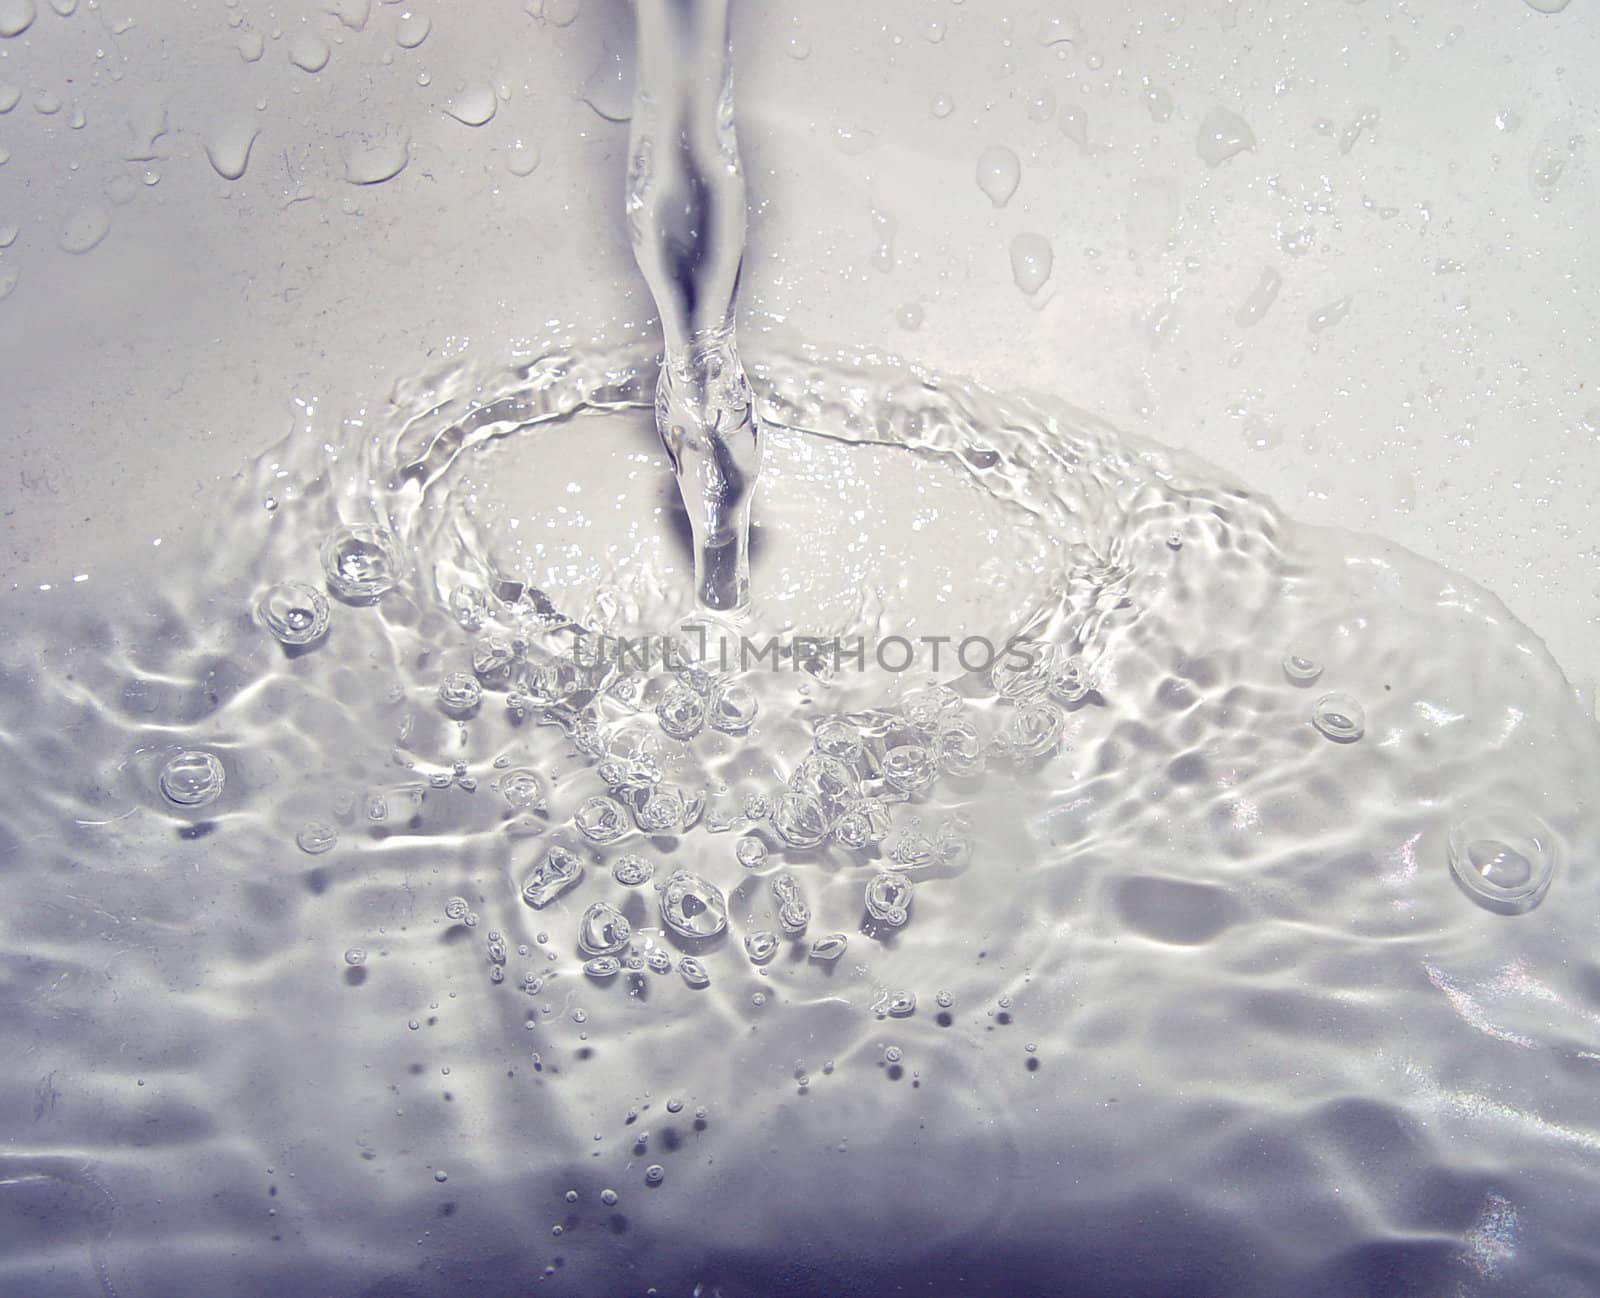 water drop by kjpargeter